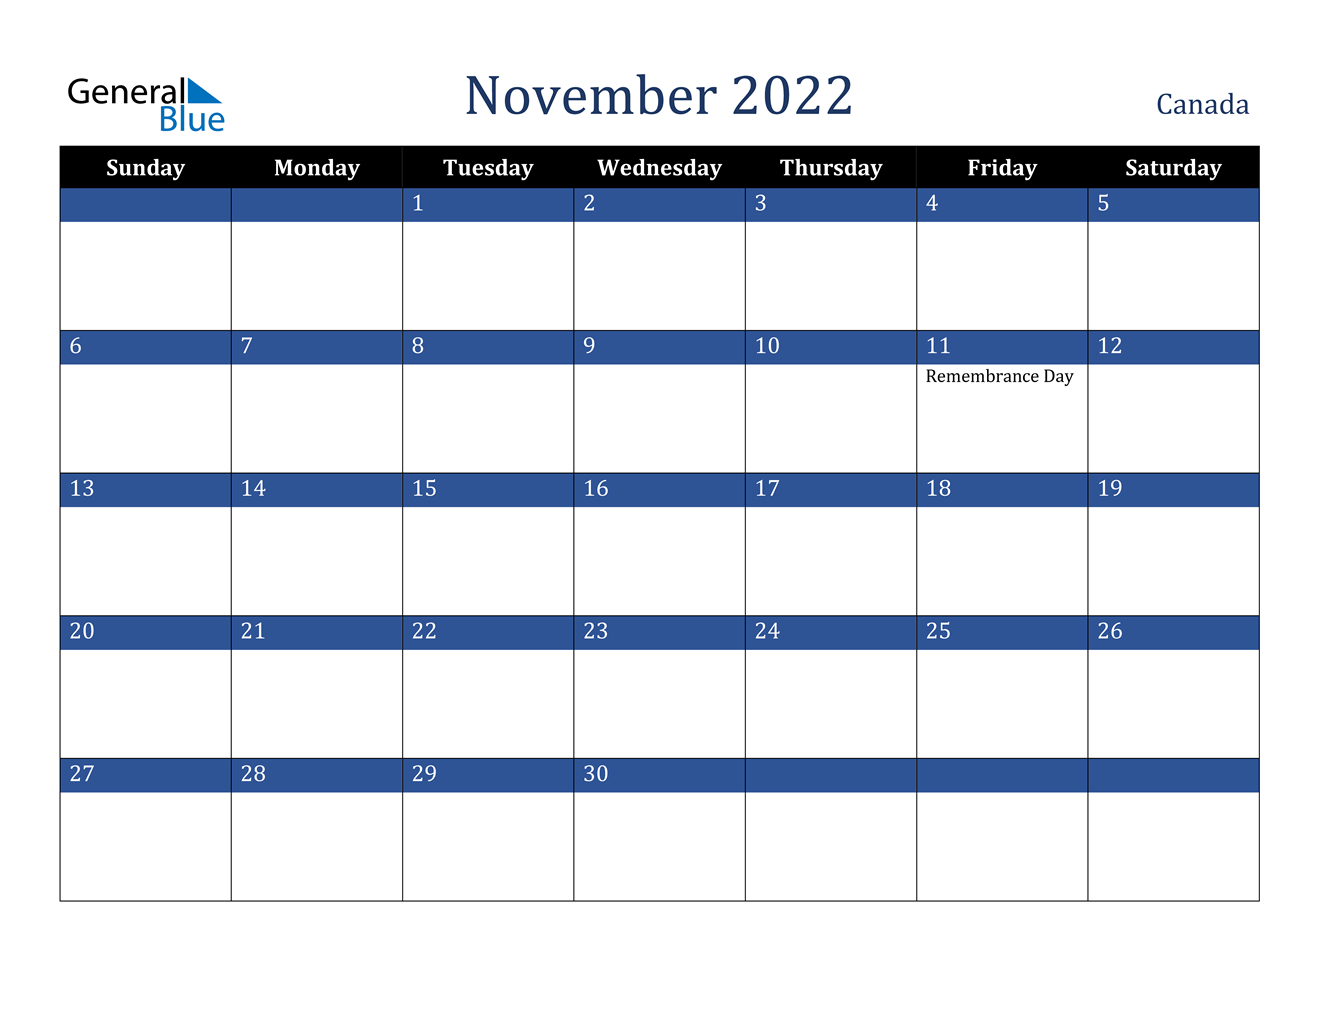 November 2022 Calendar - Canada